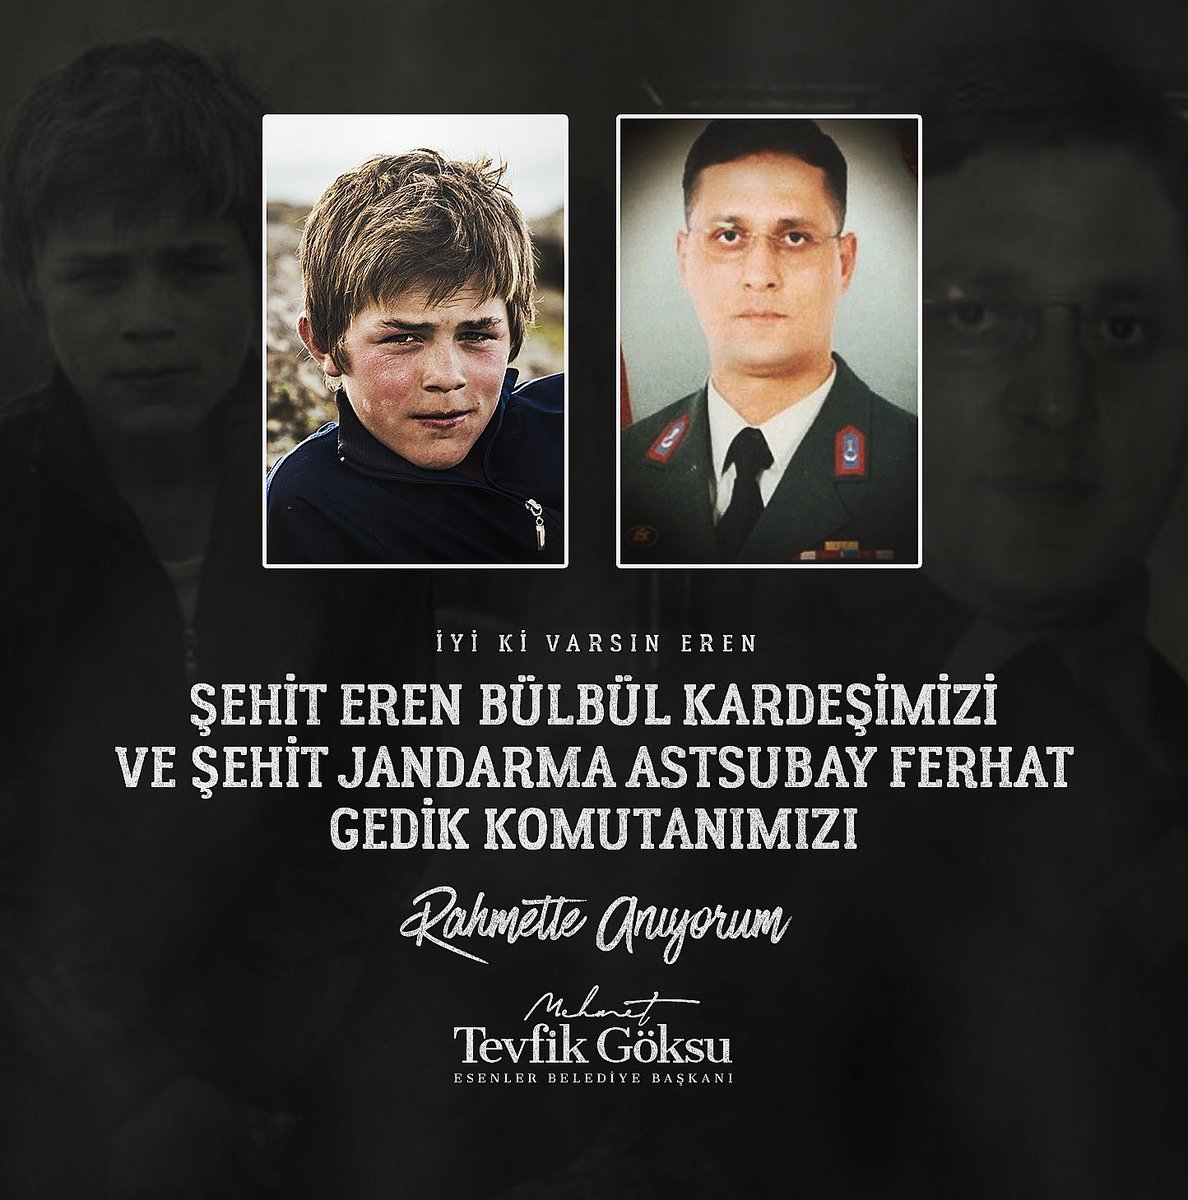 Şehadetlerinin 4. yılında Şehit Eren Bülbül kardeşimizi ve Şehit Jandarma Astsubay Kıdemli Başçavuşumuz Ferhat Gedik komutanımızı rahmetle anıyorum. #iyikivarsınEren